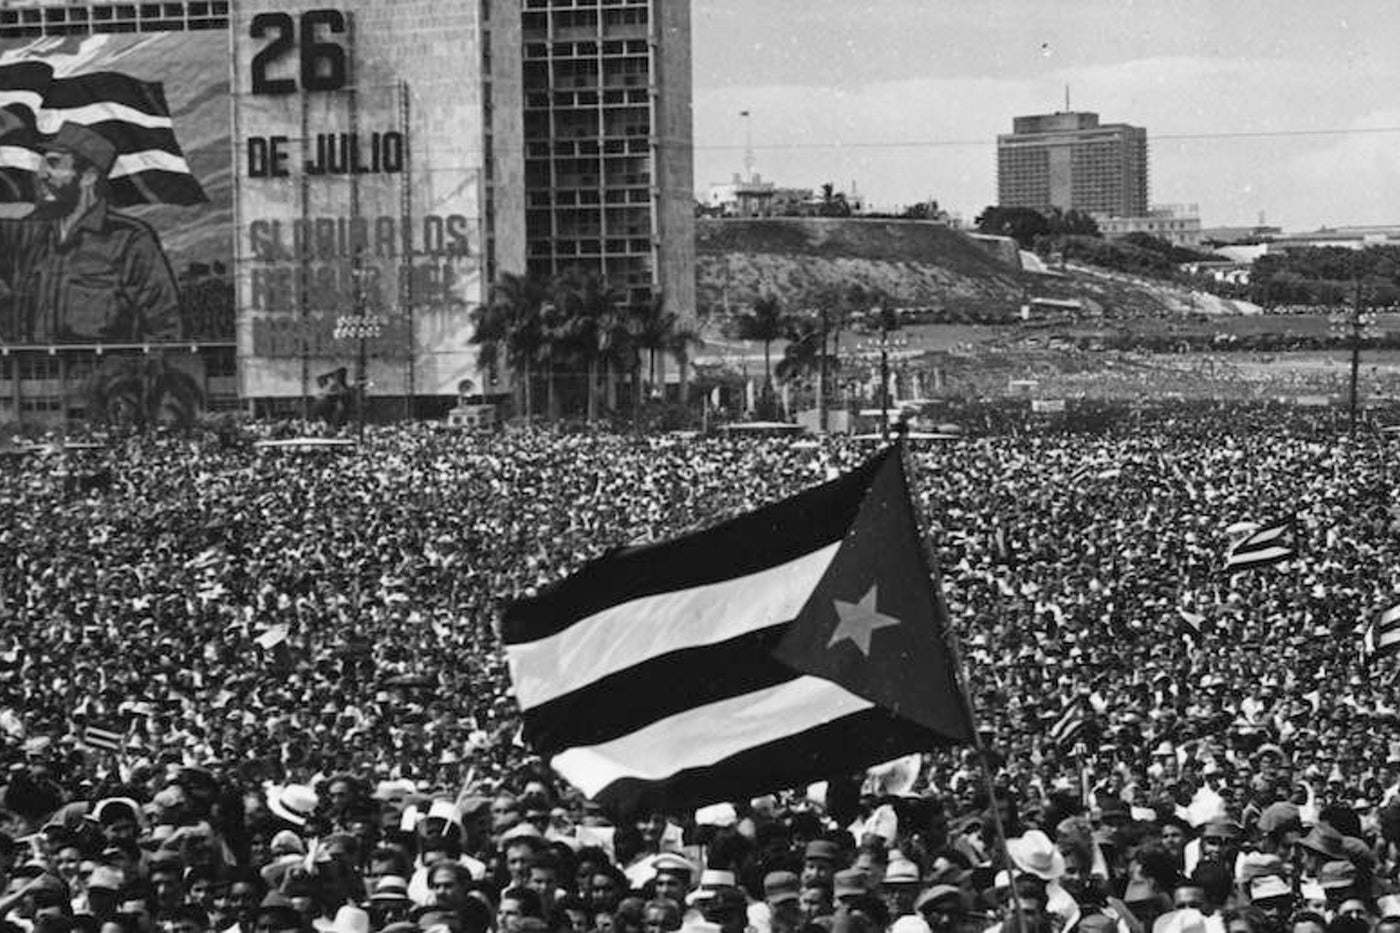 الثورة الكوبية - الانتفاضة المسلحة في كوبا التي أطاحت بحكومة فولجنسيو باتيستا - الثورة التي حصلت في كوبا بقيادة فيديل كاسترو - كيف وصل فيديل كاسترو للحكم